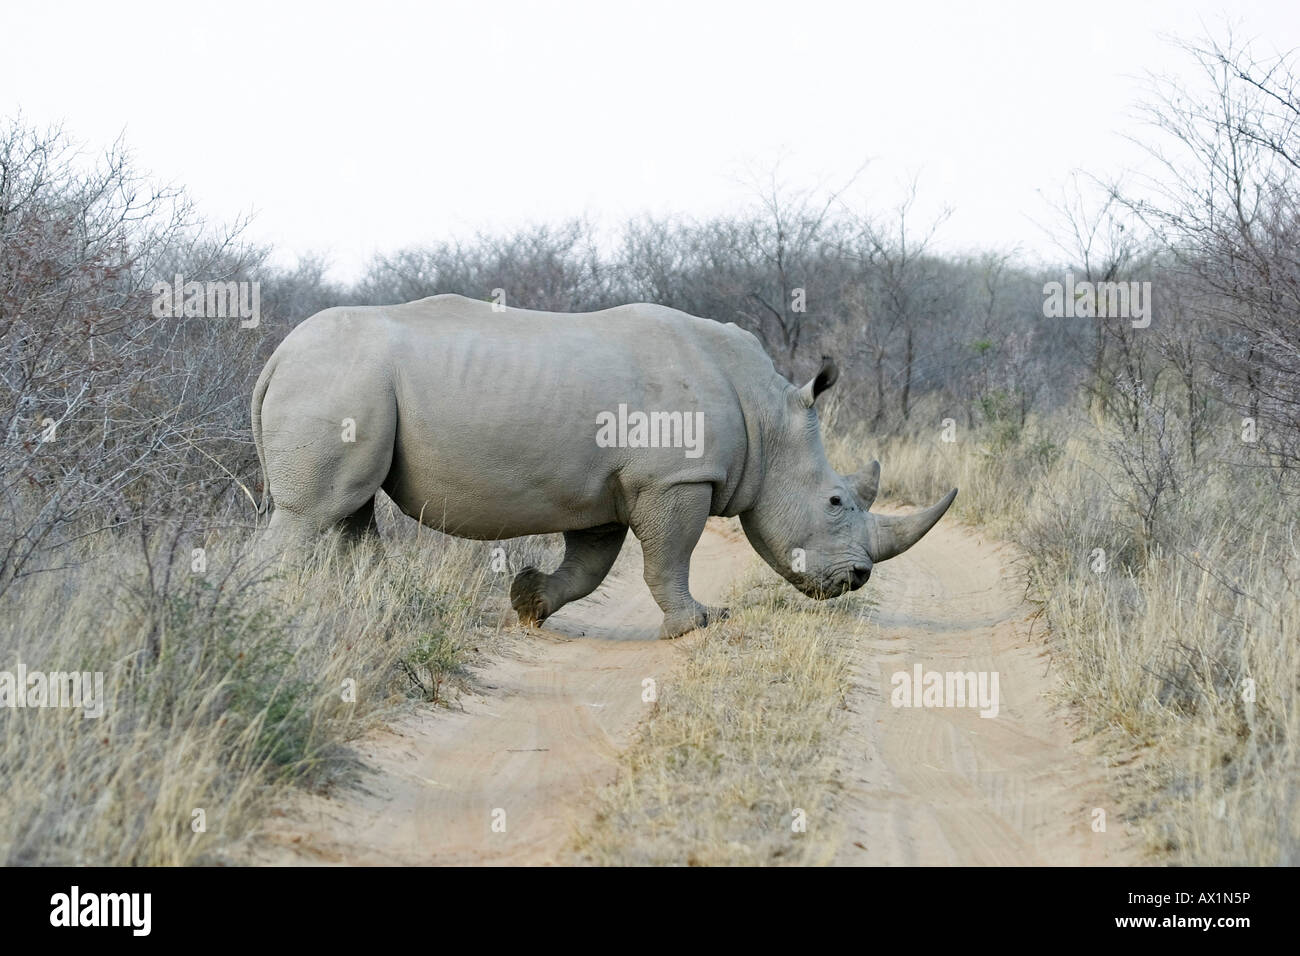 Rhinocéros blanc ou Square-lipped rhinoceros (Ceratotherium simum), Khama Rhino Sanctuary Park, Serowe, Botswana, Africa Banque D'Images